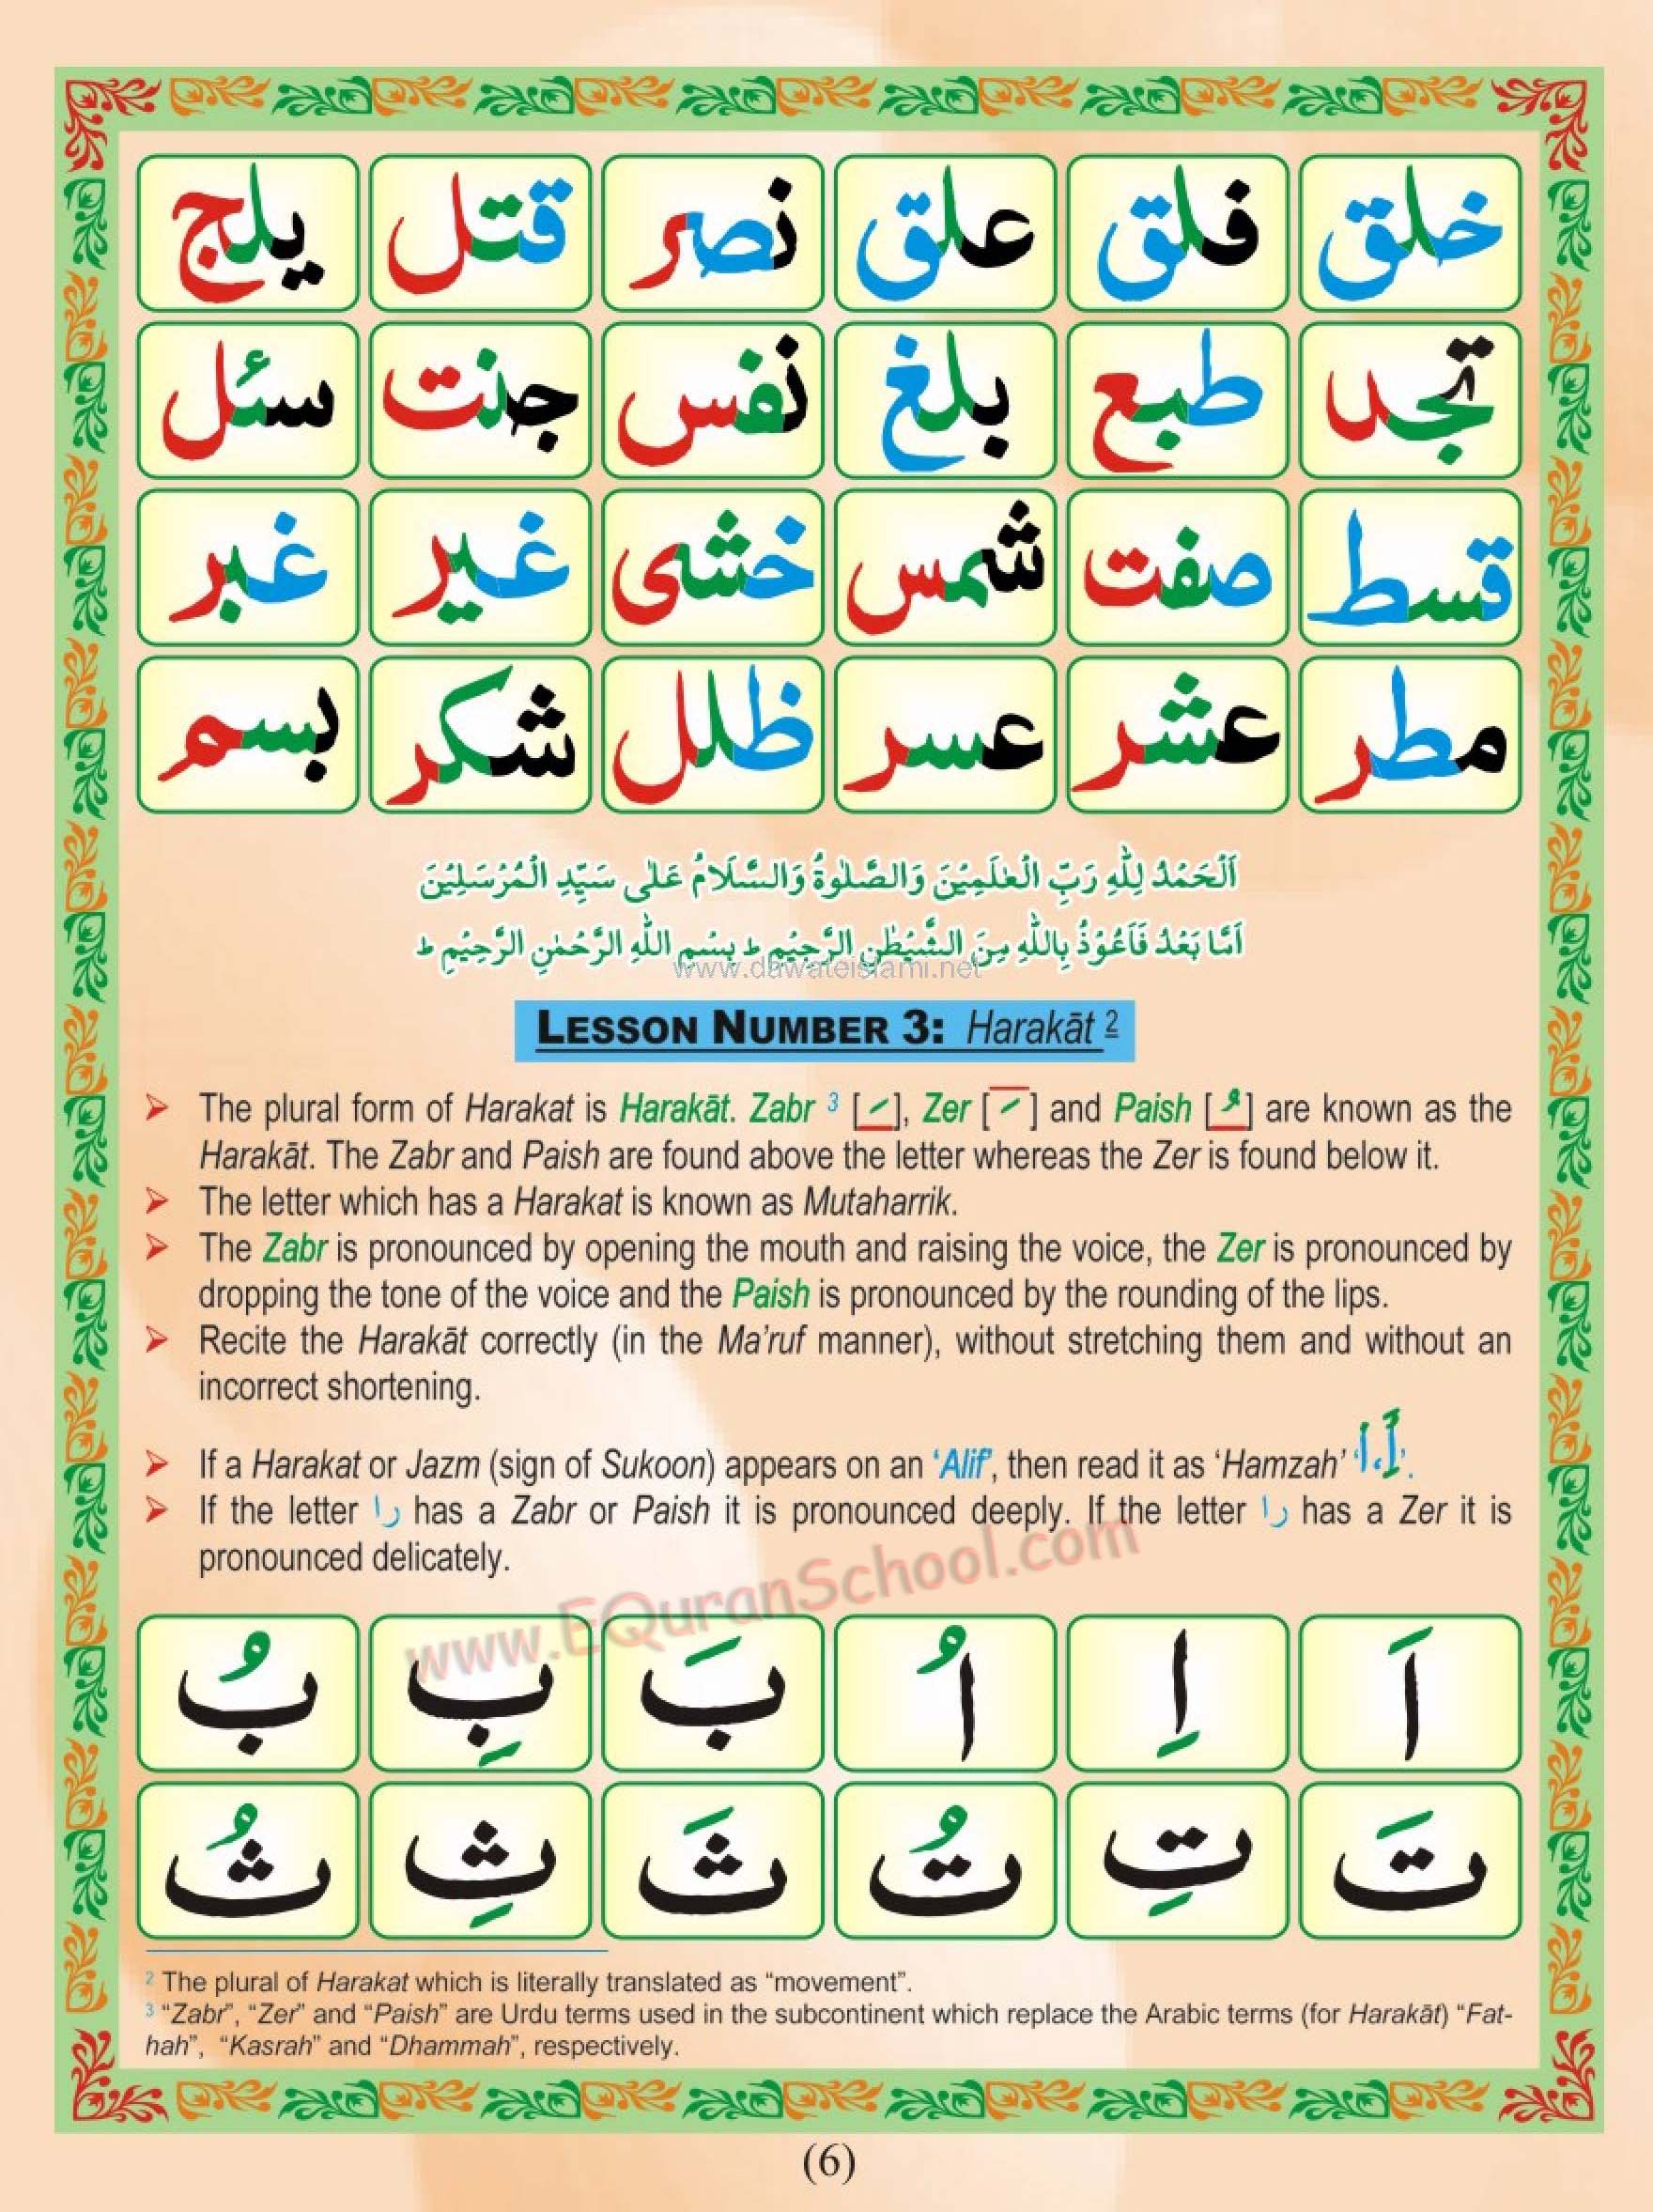 Madani Qaida Page 06: Lesson No 03, Harakaat, Fatha, Damma, Kasra, Zabar, Zer, Pesh